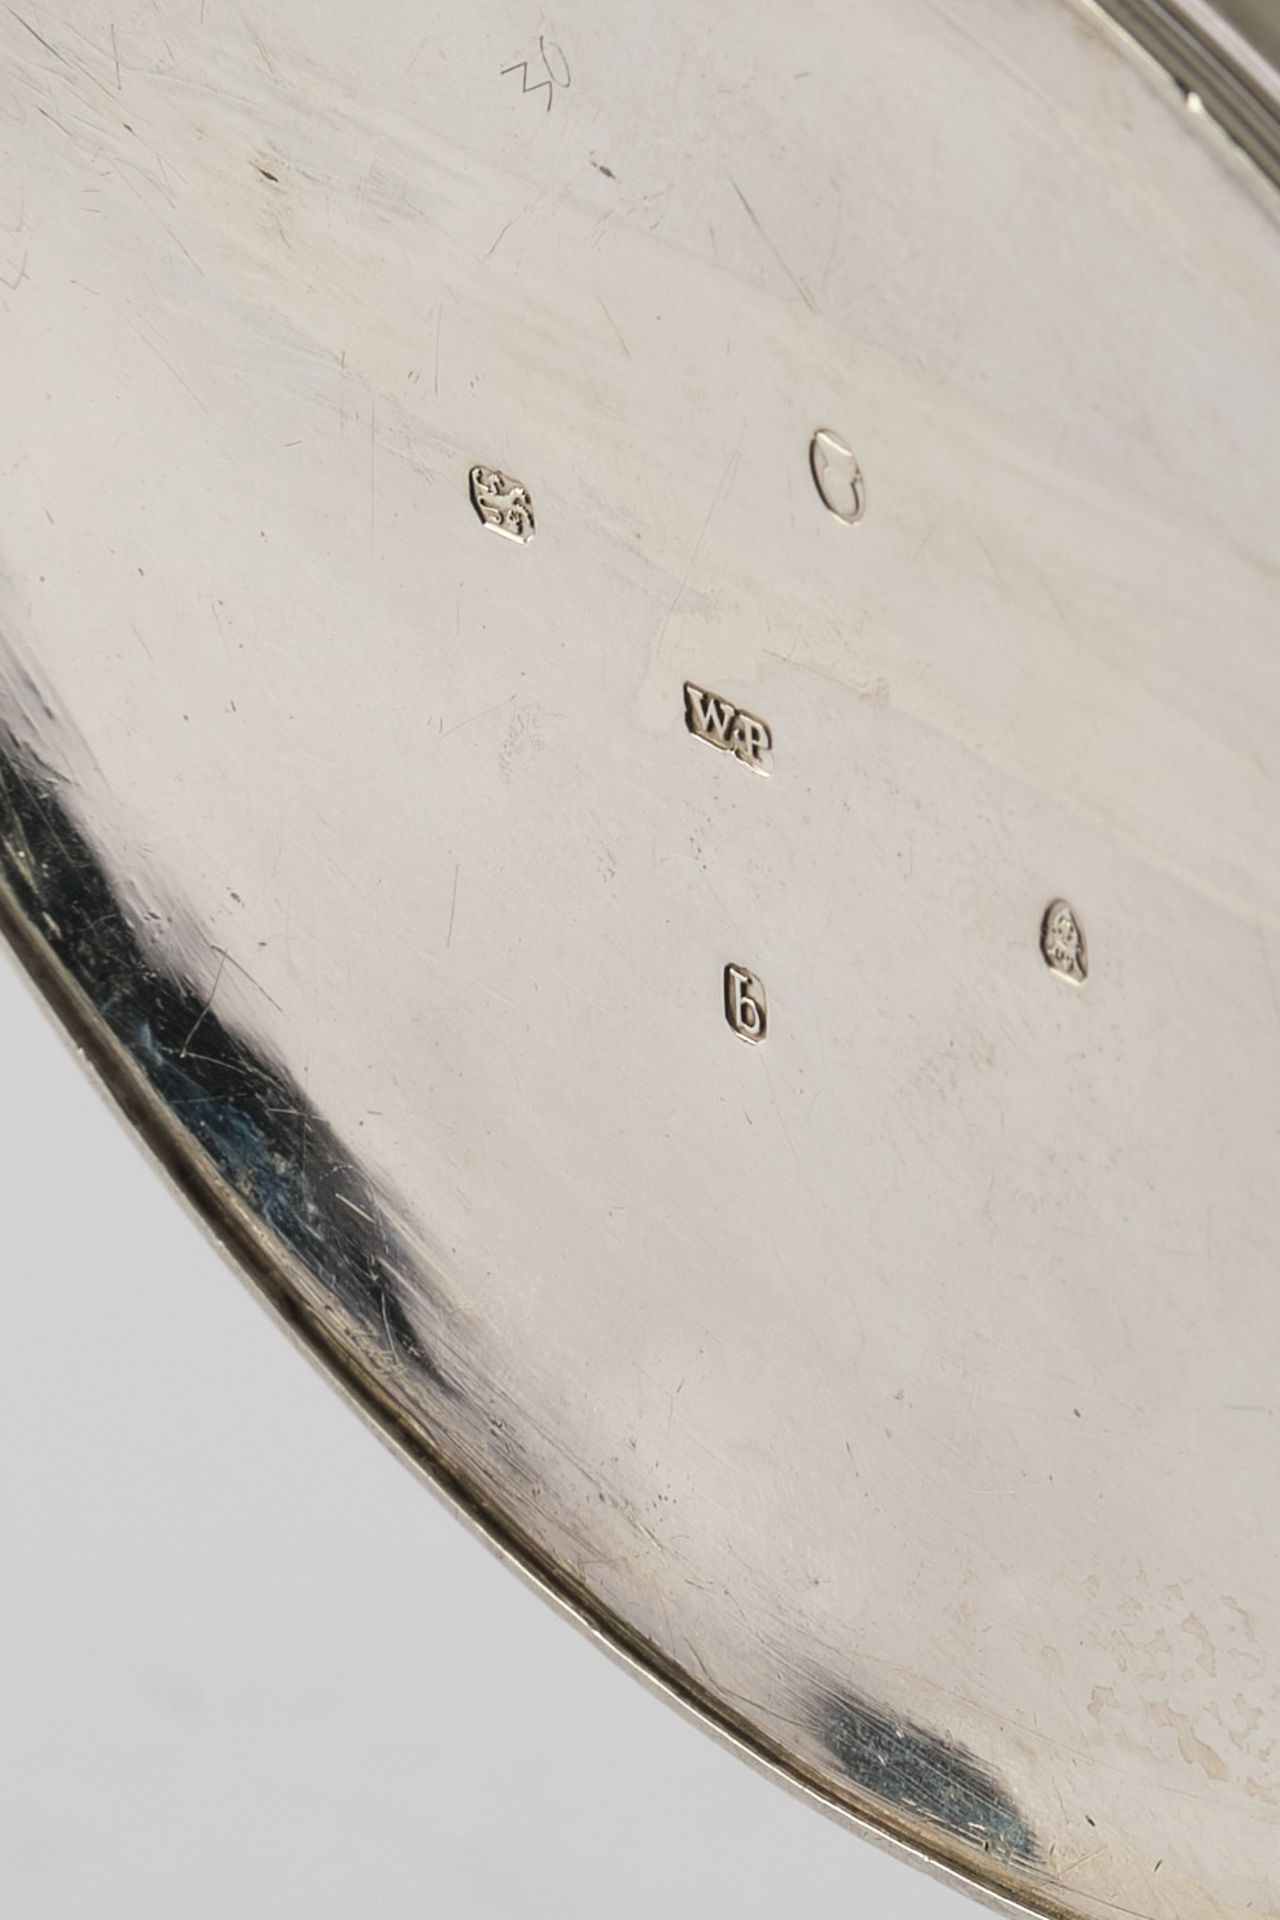 Teekanne, Silber 925, London, 1791, William Plummer, spitzovale Steilwandform, zwei Kartuschen, dav - Image 3 of 3